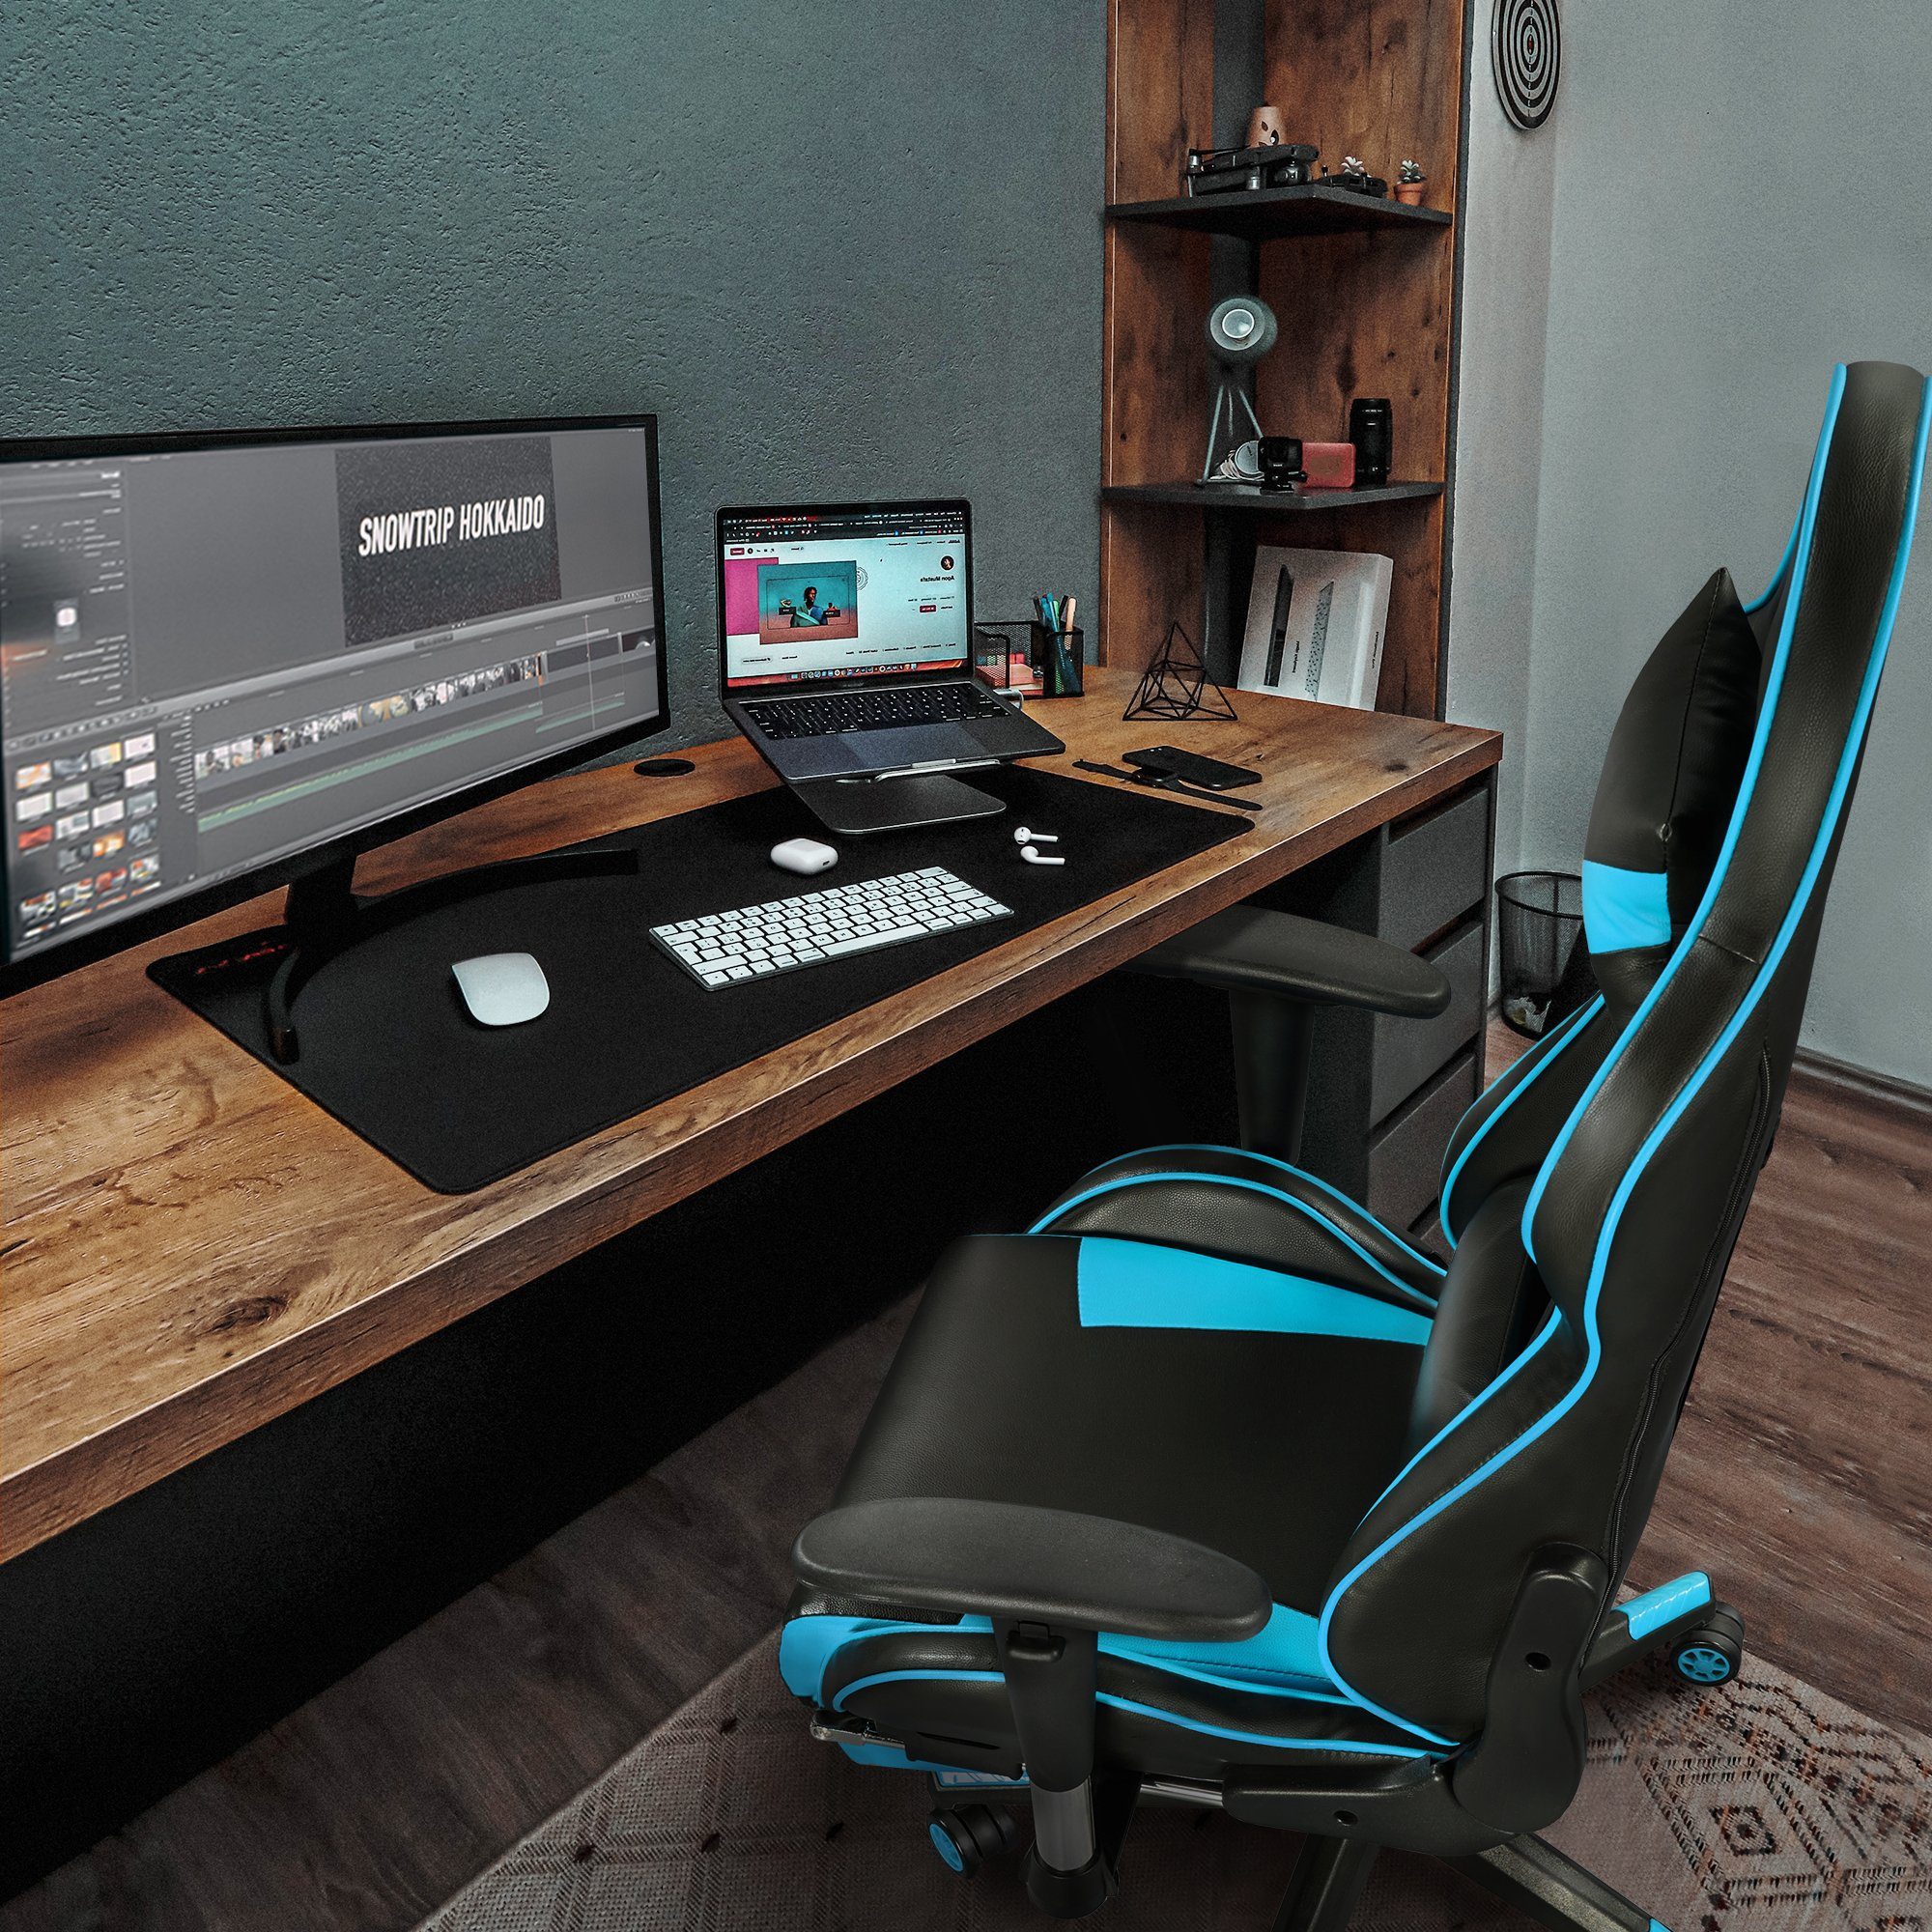 mit Yaheetech einstellbaren Gaming Armlehnen Blue Neon Chair, Gaming Stuhl